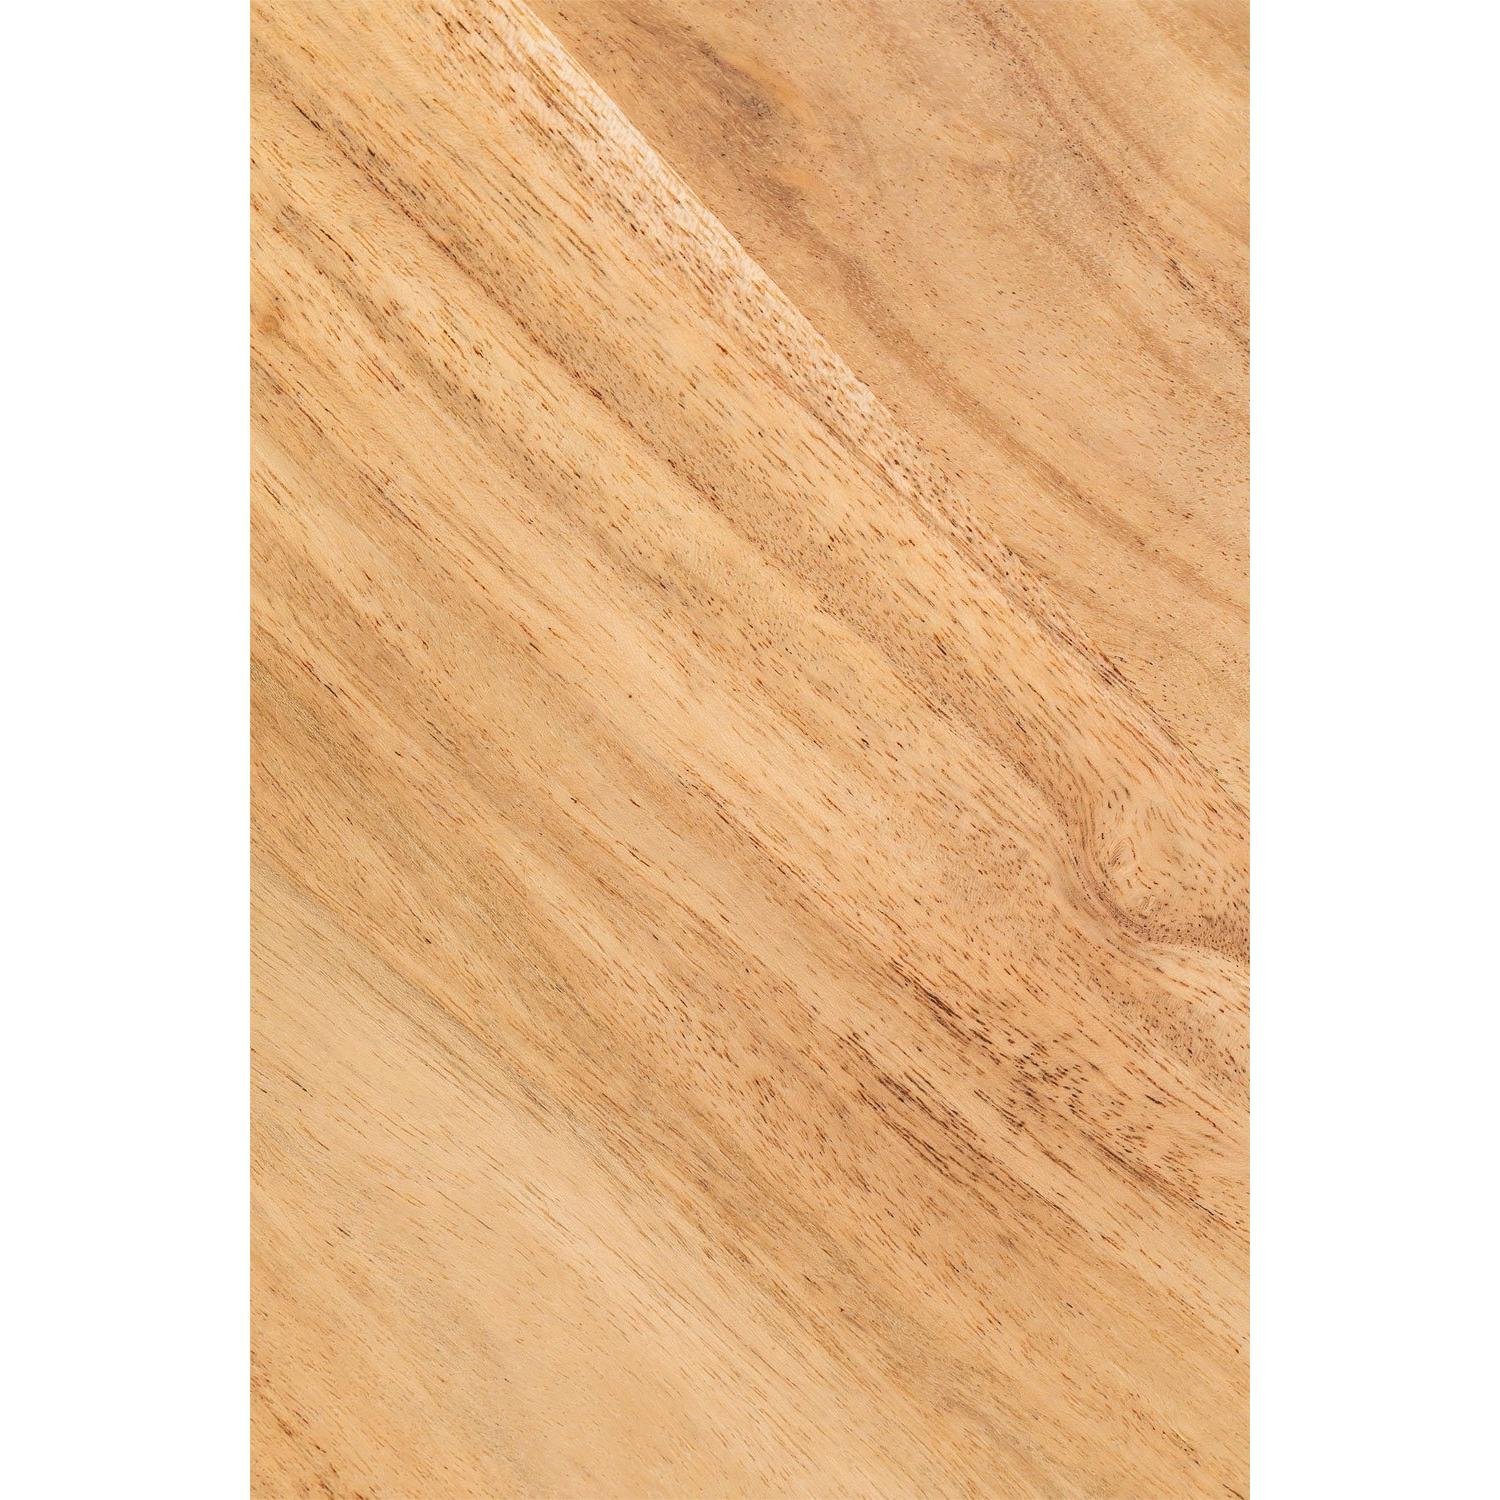 Konsolinis staliukas AMBYL, akacijos mediena, natūrali